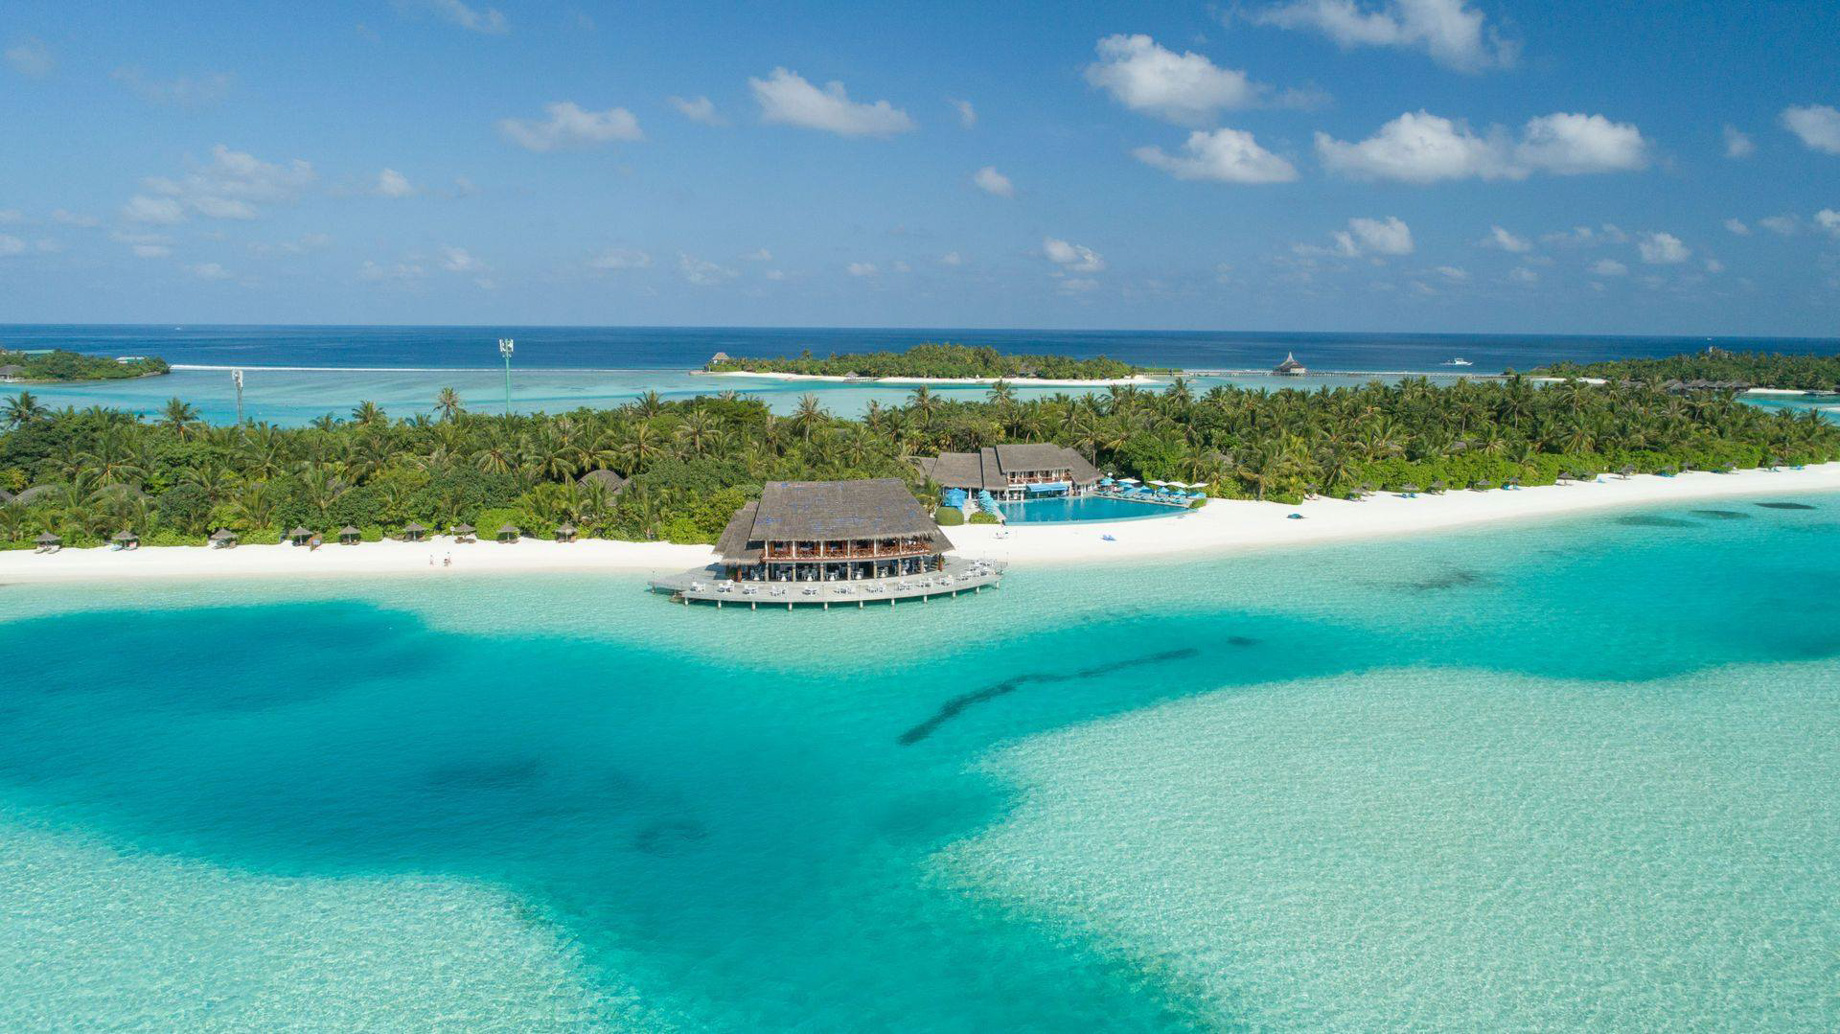 Anantara Thigu Maldives Resort – South Male Atoll, Maldives – Resort Aerial View